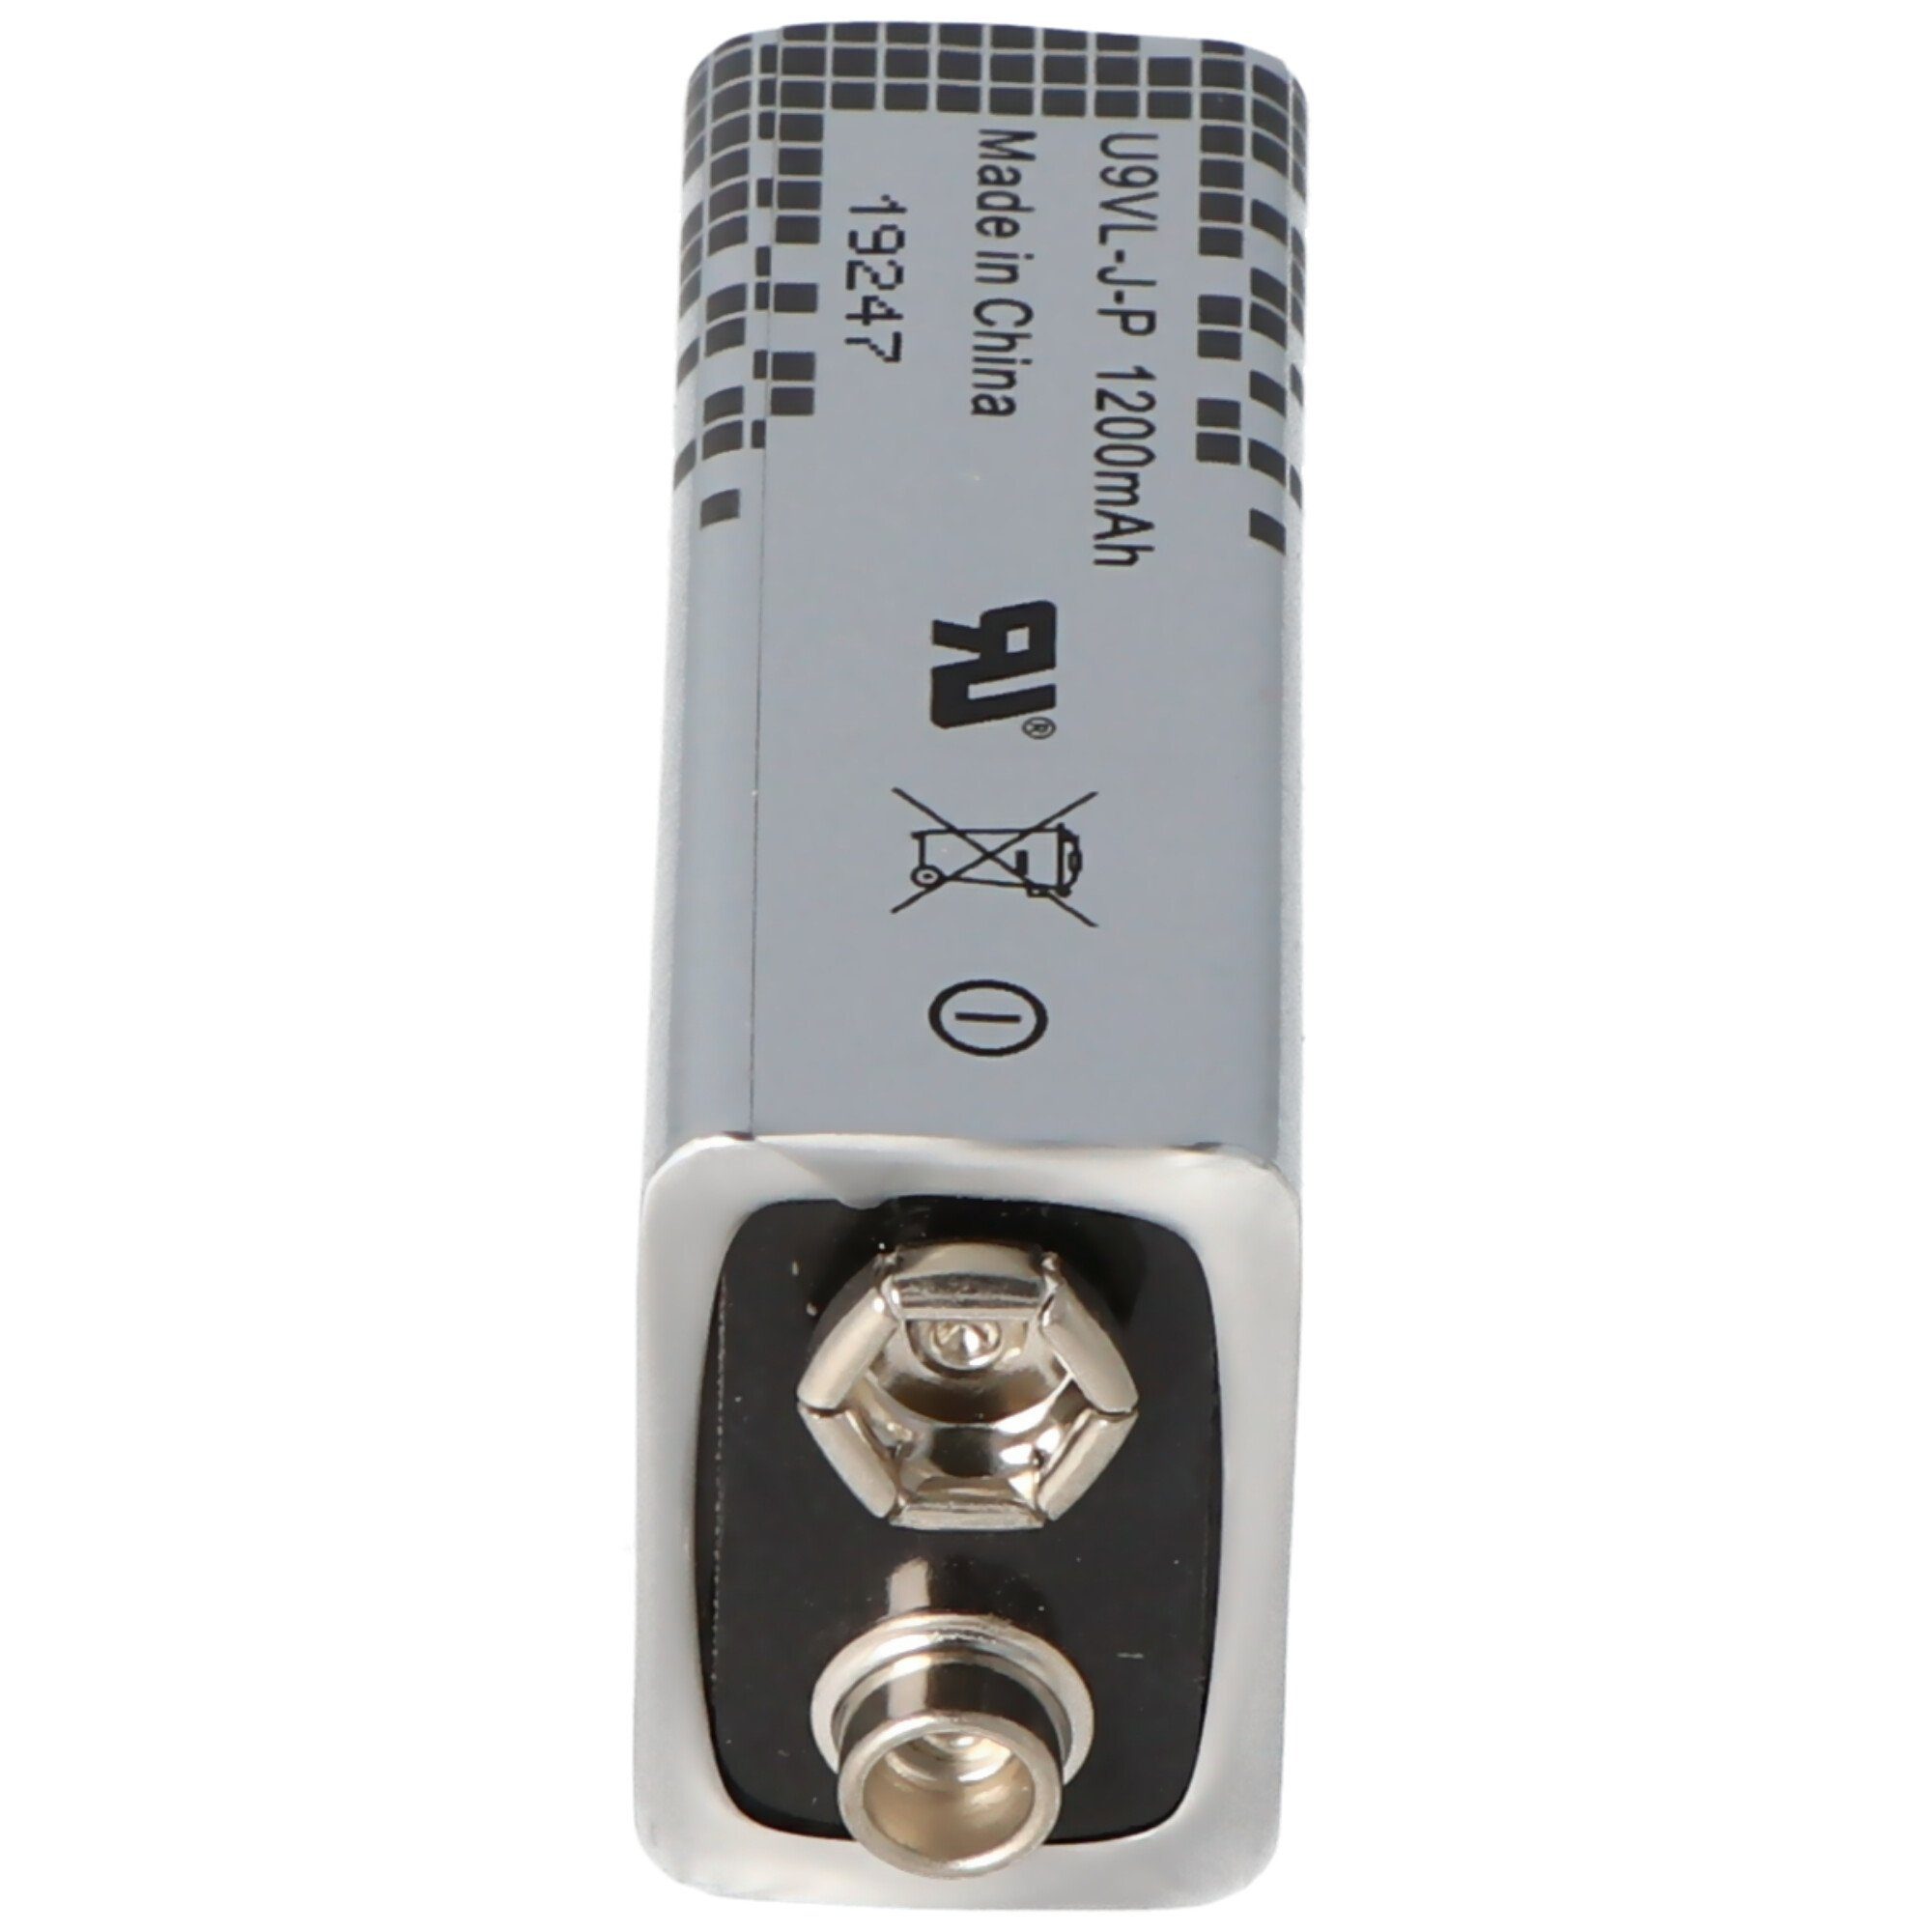 Batterie und Ersatzbatterie H für Secvest UltraLife passend FU2993 Funk-Rauchmelder ABUS